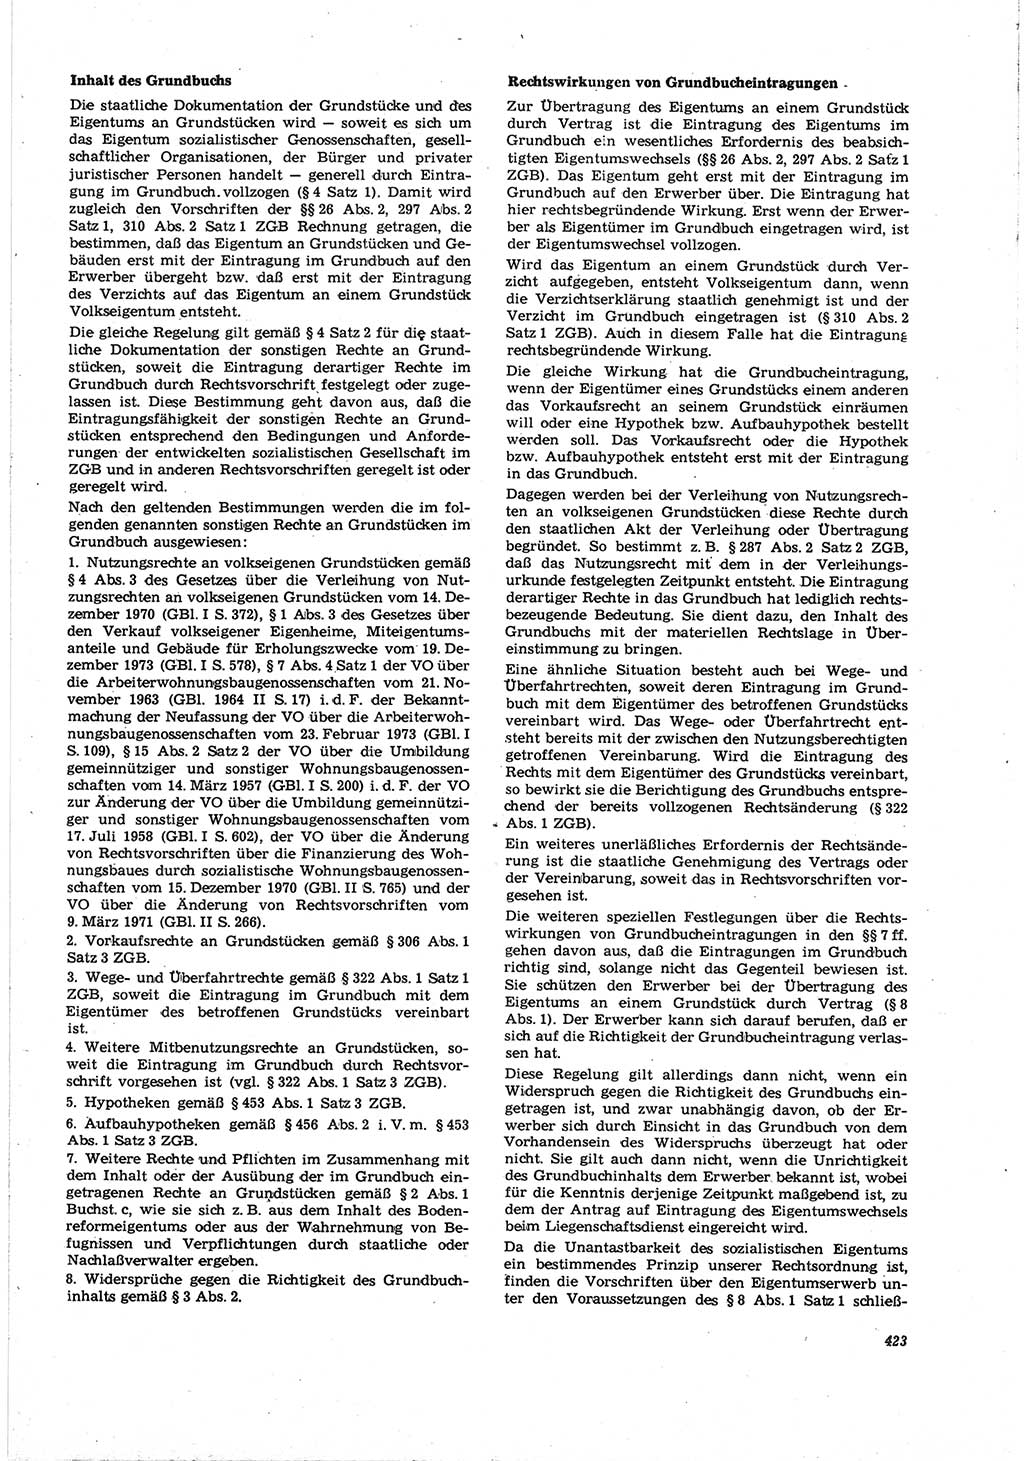 Neue Justiz (NJ), Zeitschrift für Recht und Rechtswissenschaft [Deutsche Demokratische Republik (DDR)], 30. Jahrgang 1976, Seite 423 (NJ DDR 1976, S. 423)